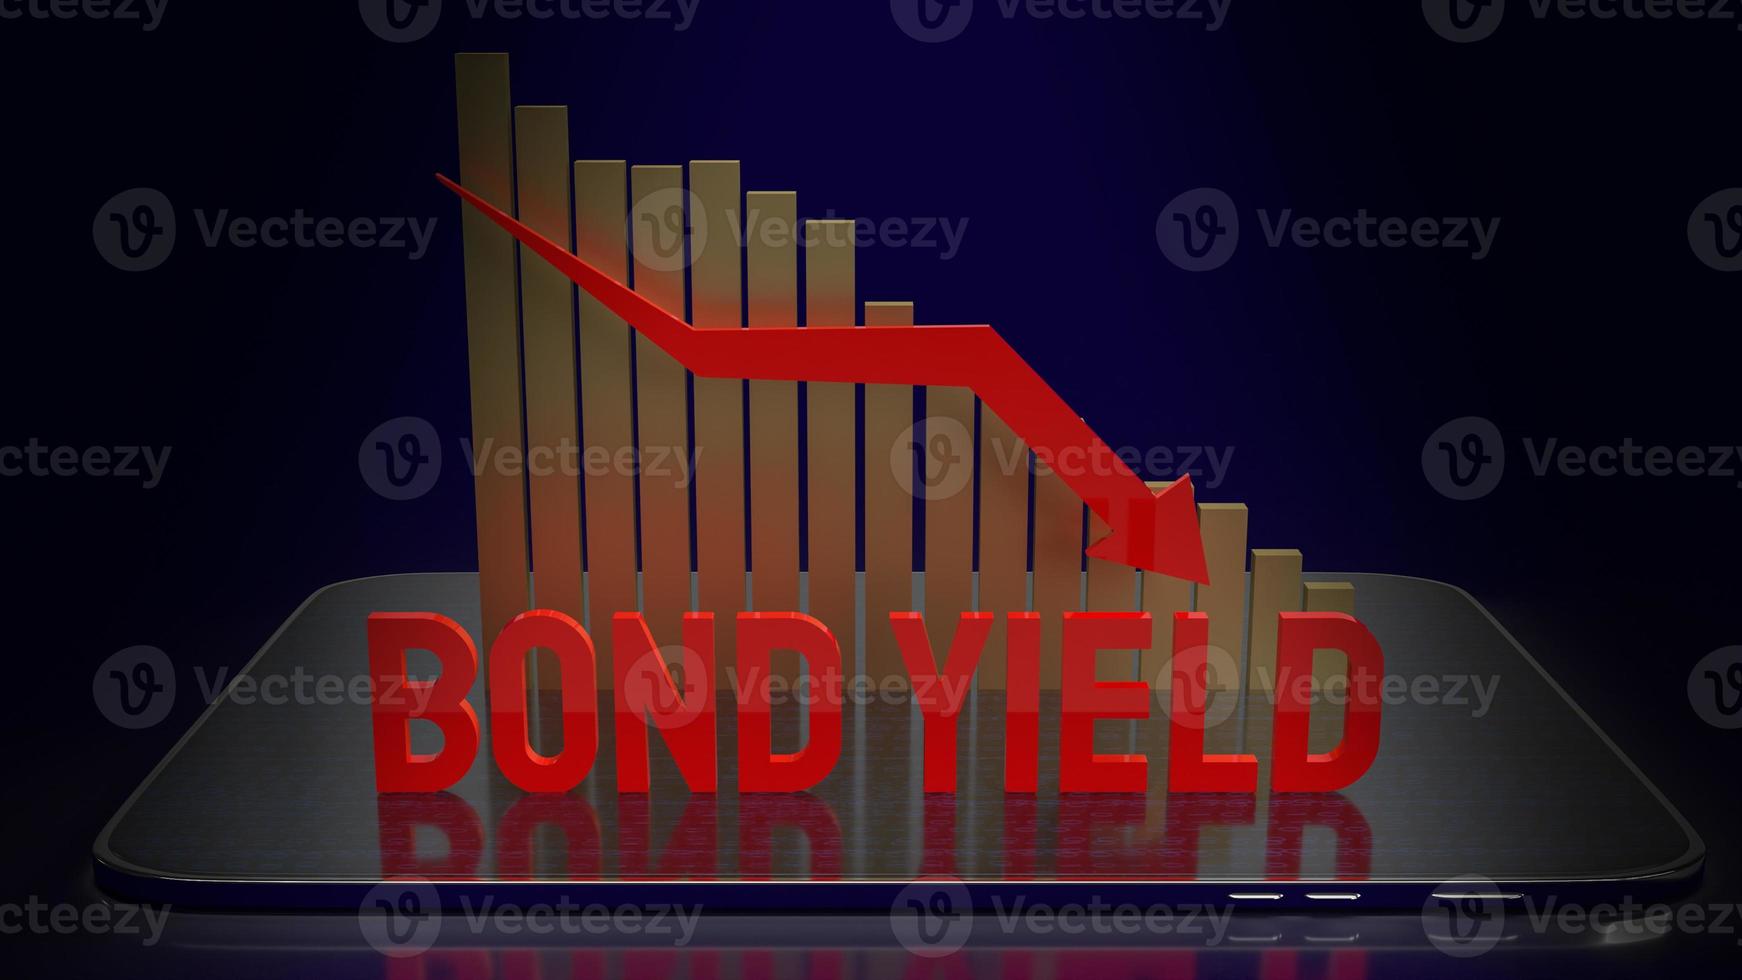 el bono produce la palabra roja y la flecha del gráfico hacia abajo en el fondo para la representación 3d del contenido comercial foto